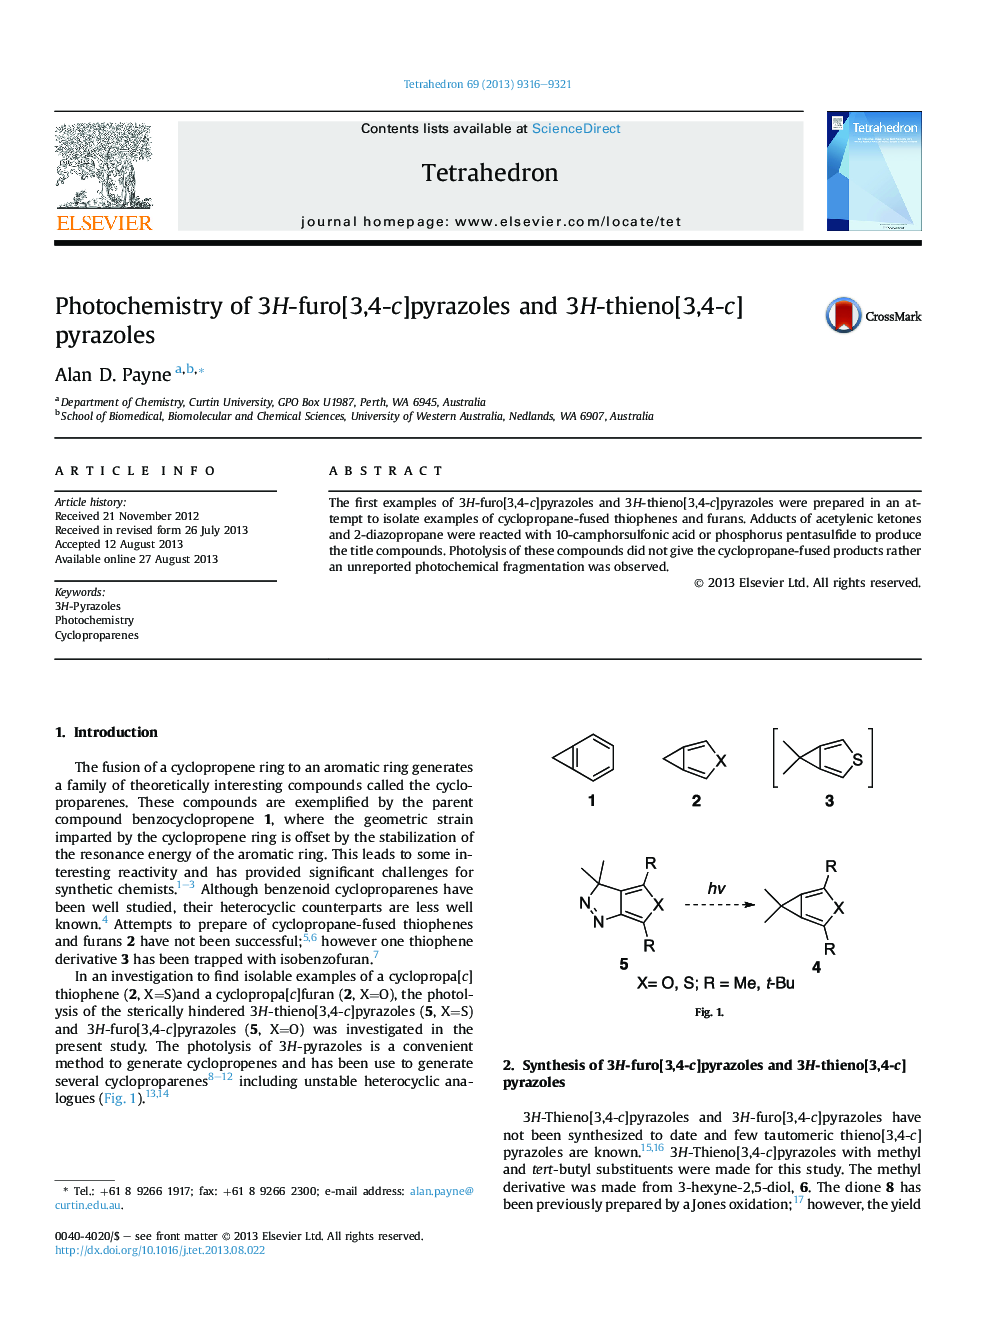 Photochemistry of 3H-furo[3,4-c]pyrazoles and 3H-thieno[3,4-c]pyrazoles